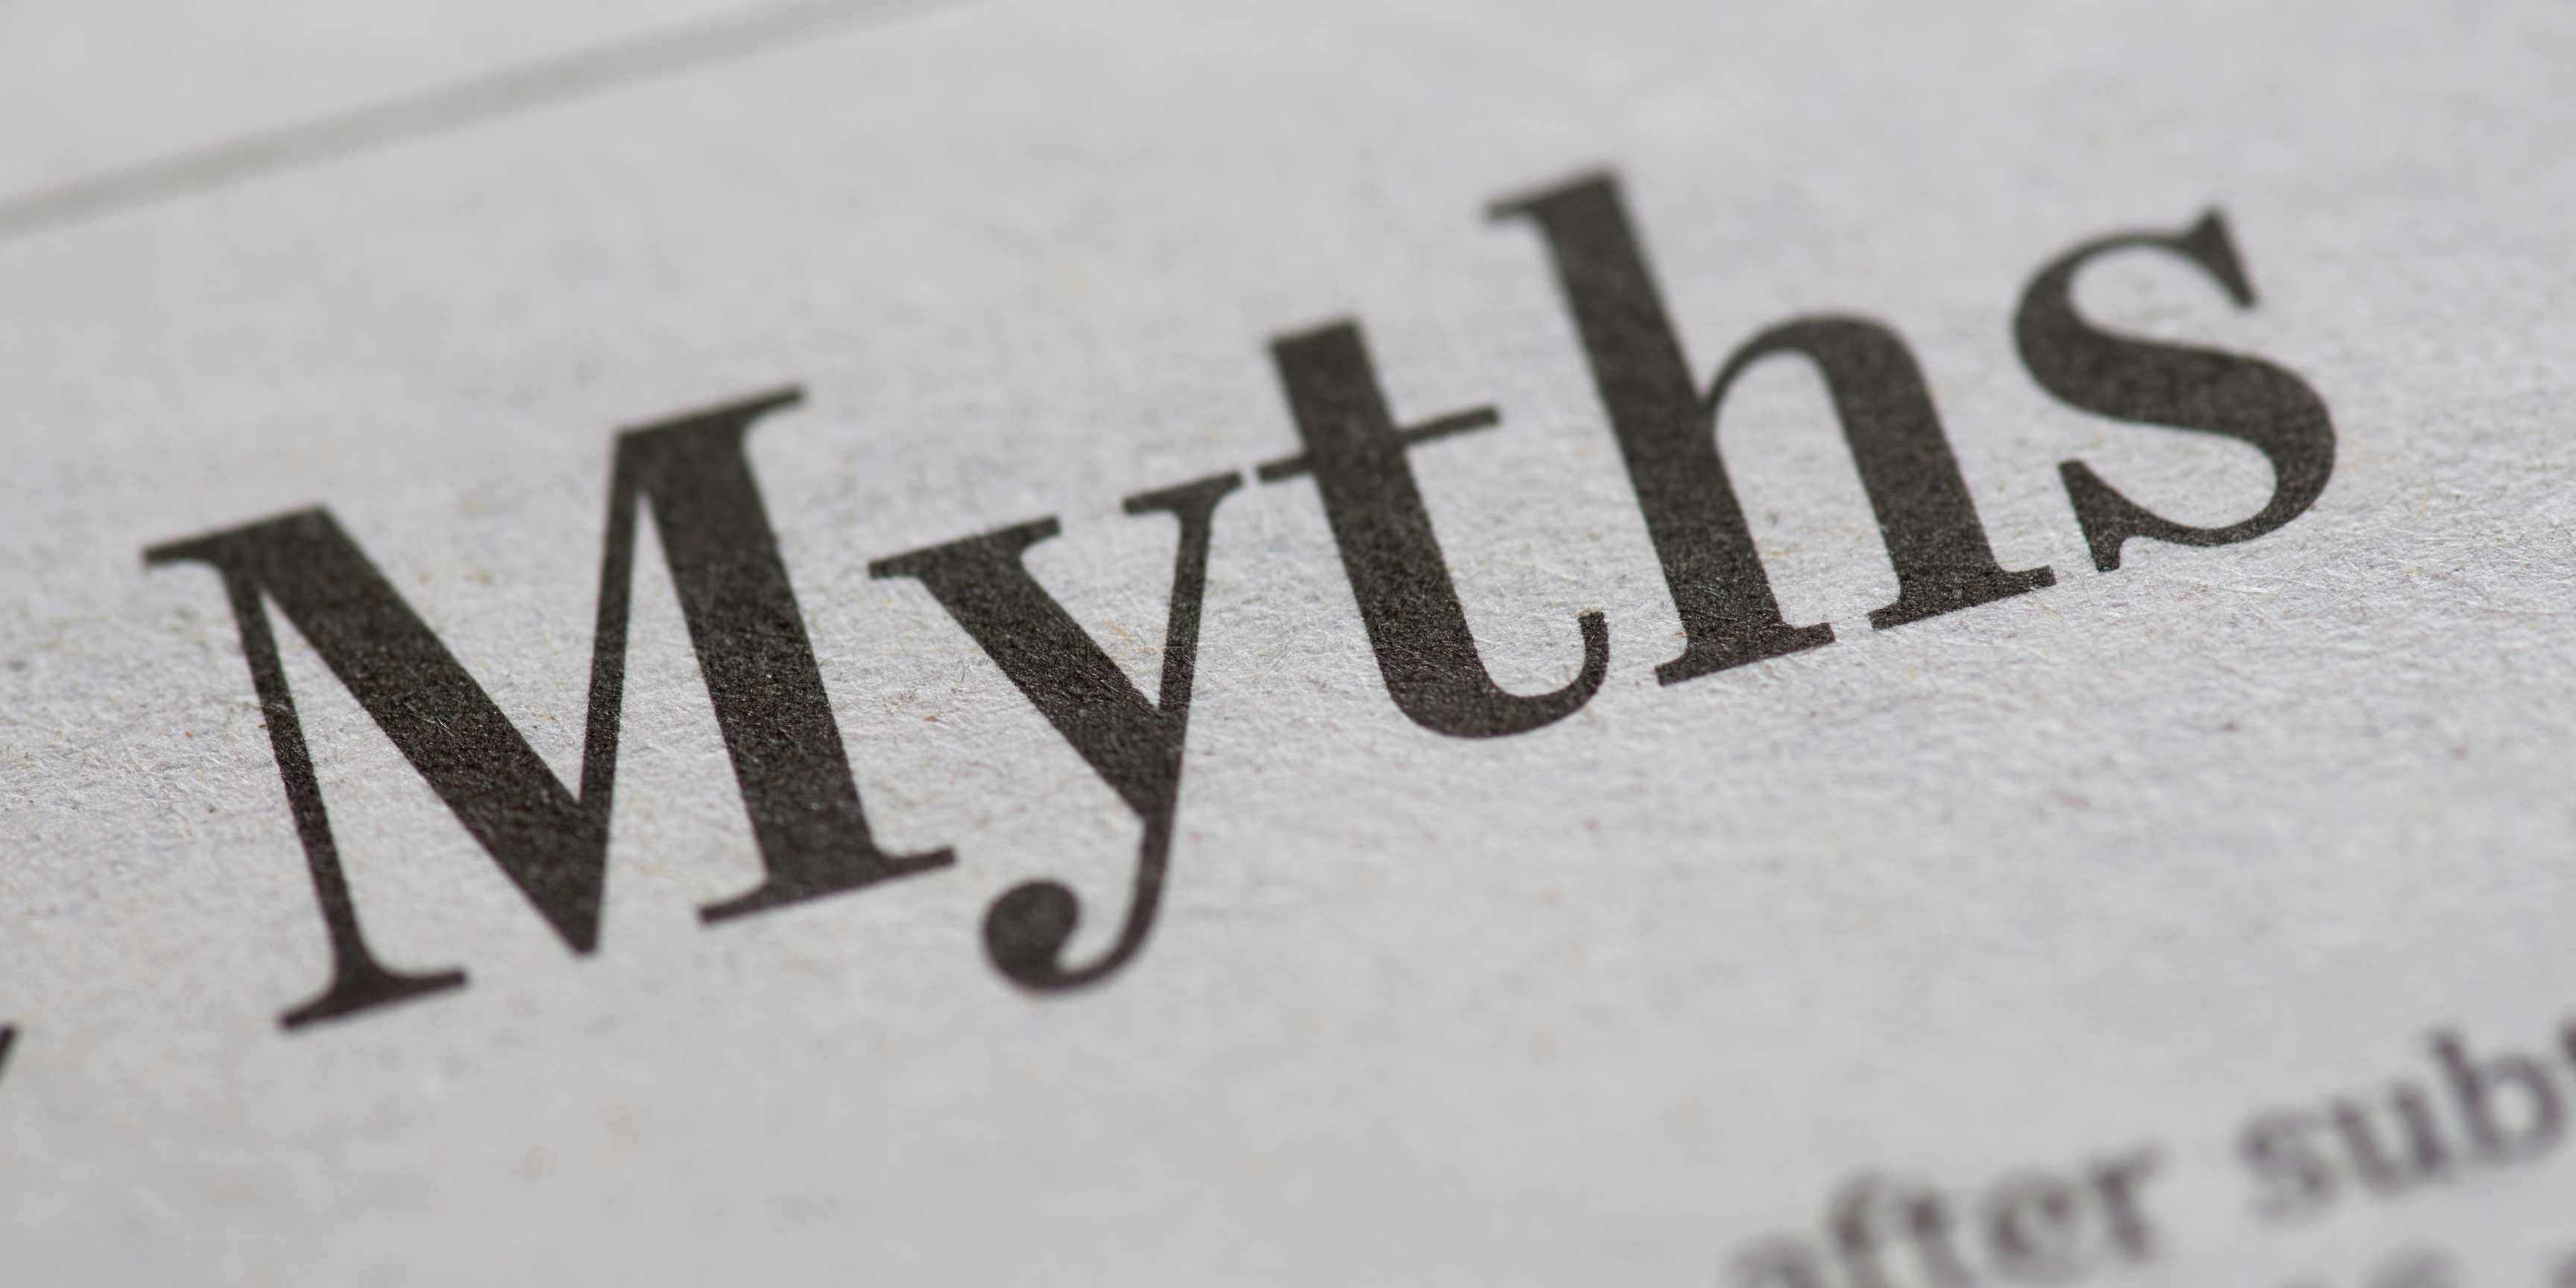 Mythen als Symbol für Perioden Mythen steht als Schriftzug im Bild.